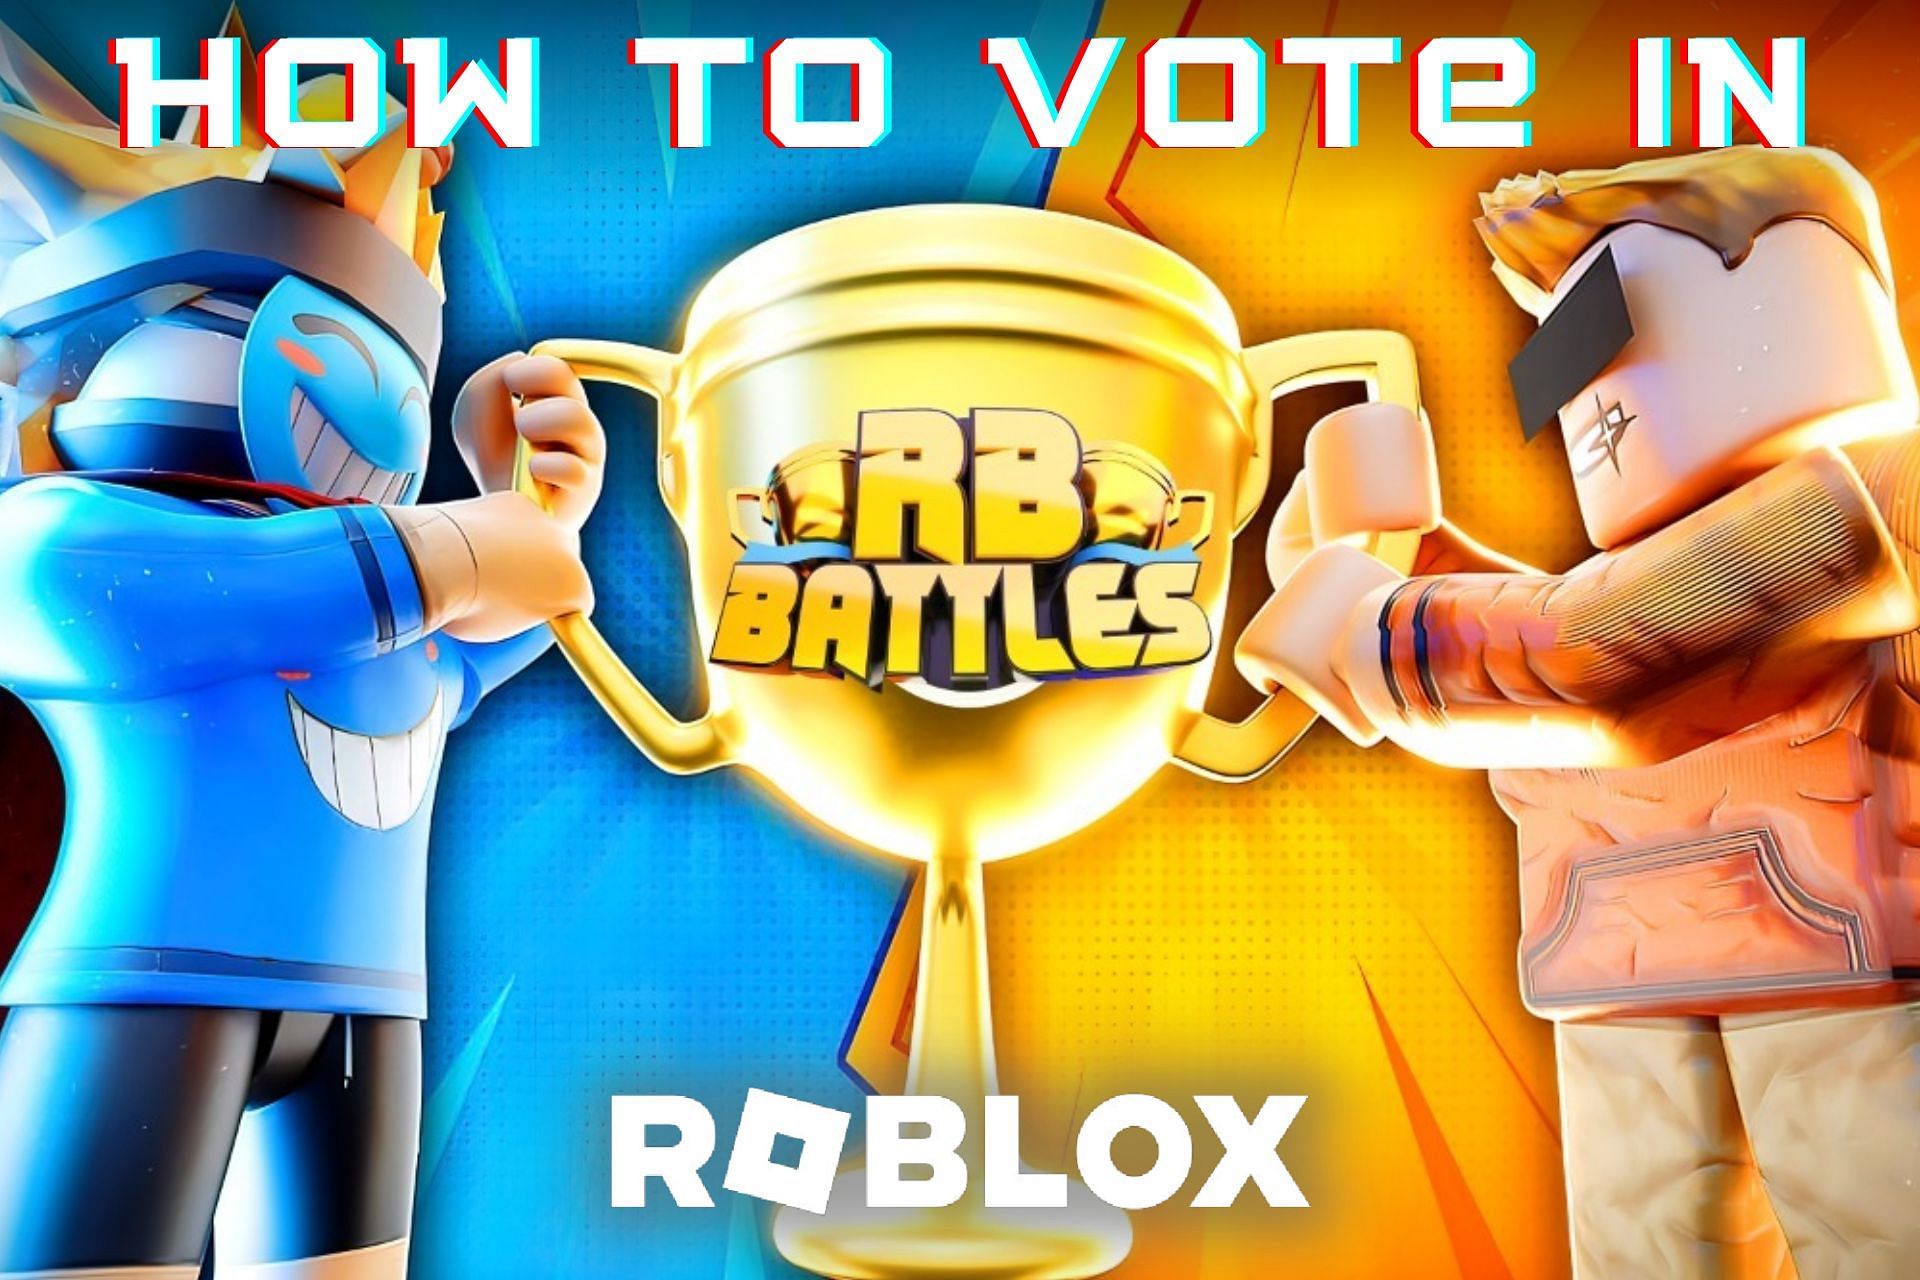 Start voting in RB Battles as soon as possible (Image via Sportskeeda)